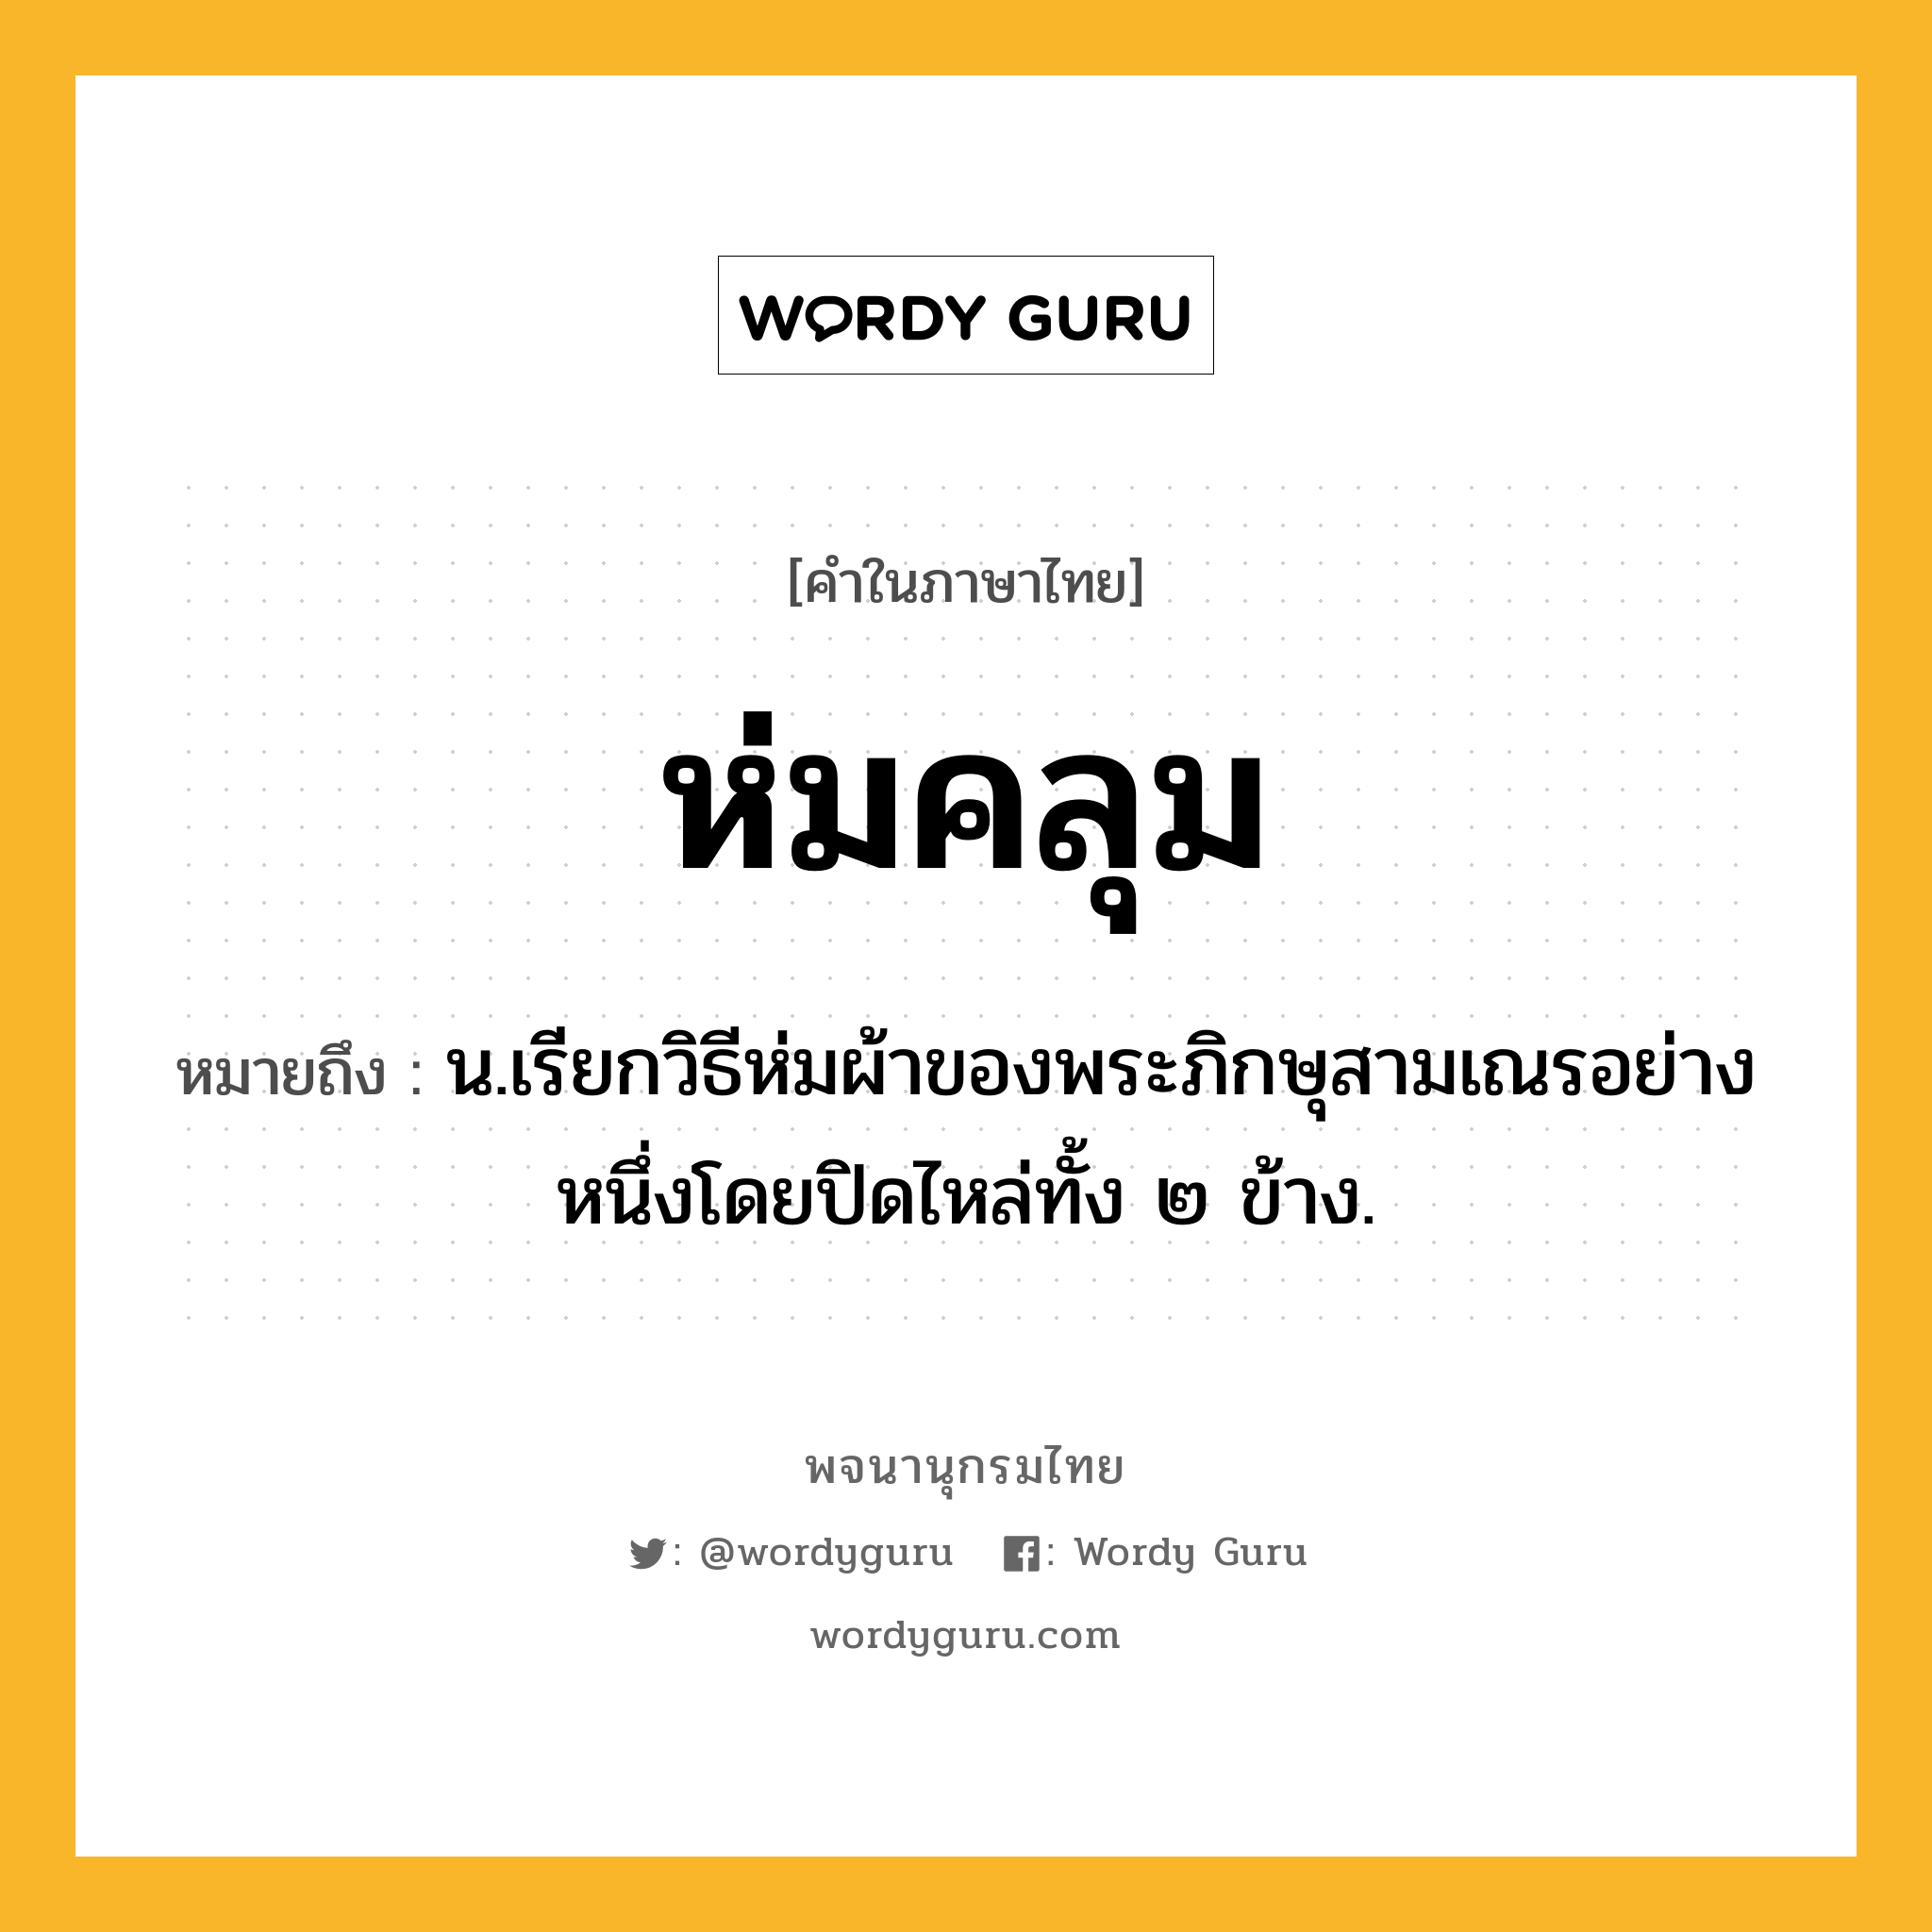 ห่มคลุม ความหมาย หมายถึงอะไร?, คำในภาษาไทย ห่มคลุม หมายถึง น.เรียกวิธีห่มผ้าของพระภิกษุสามเณรอย่างหนึ่งโดยปิดไหล่ทั้ง ๒ ข้าง.